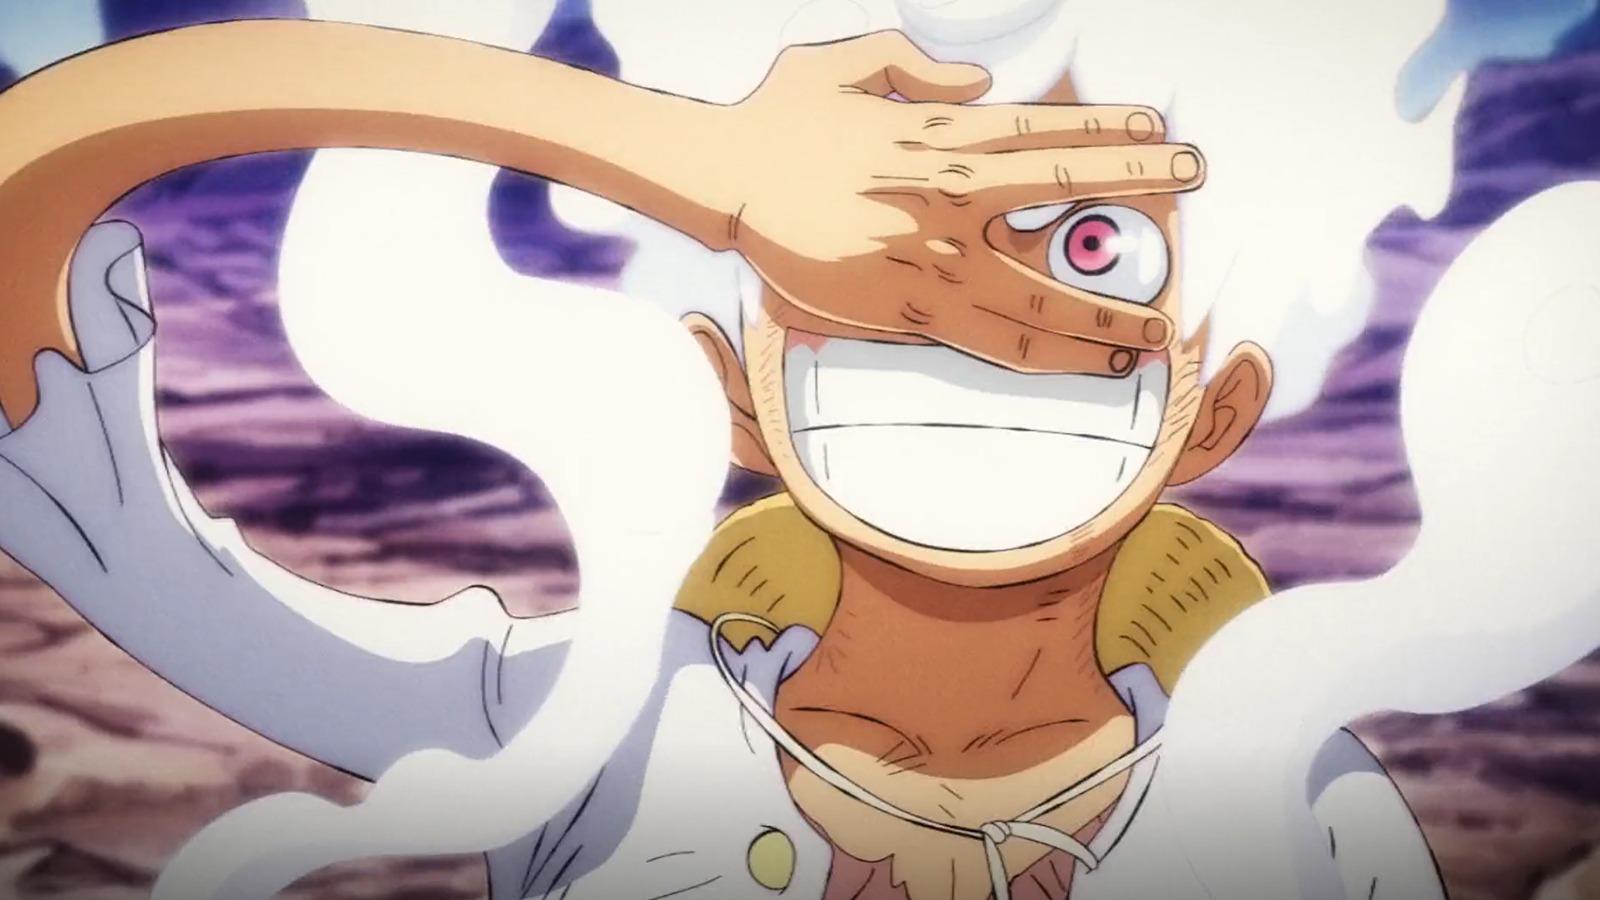 Netflix Announces 'The One Piece' Anime Adaptation – Details